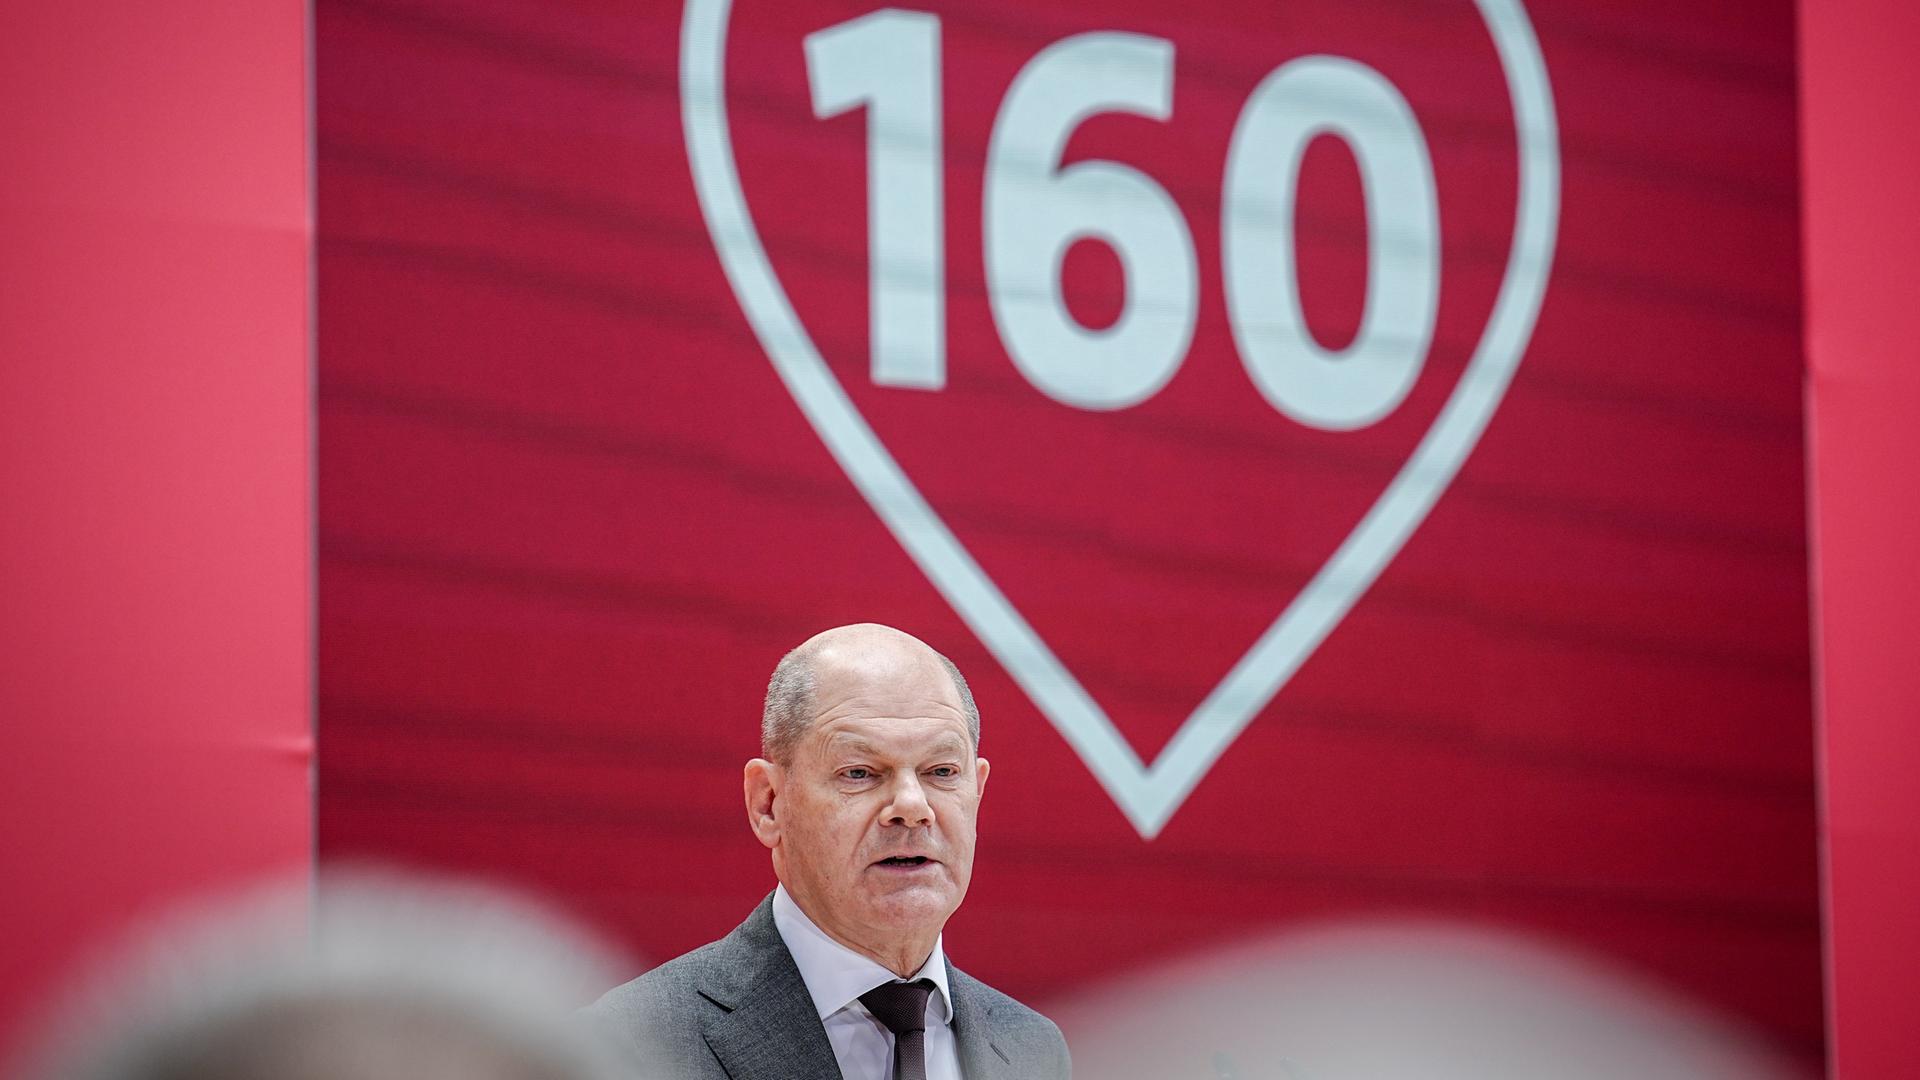 Bundeskanzler Olaf Scholz spricht auf dem Festakt zu 160 Jahren SPD im Willy-Brandt-Haus in Berlin.